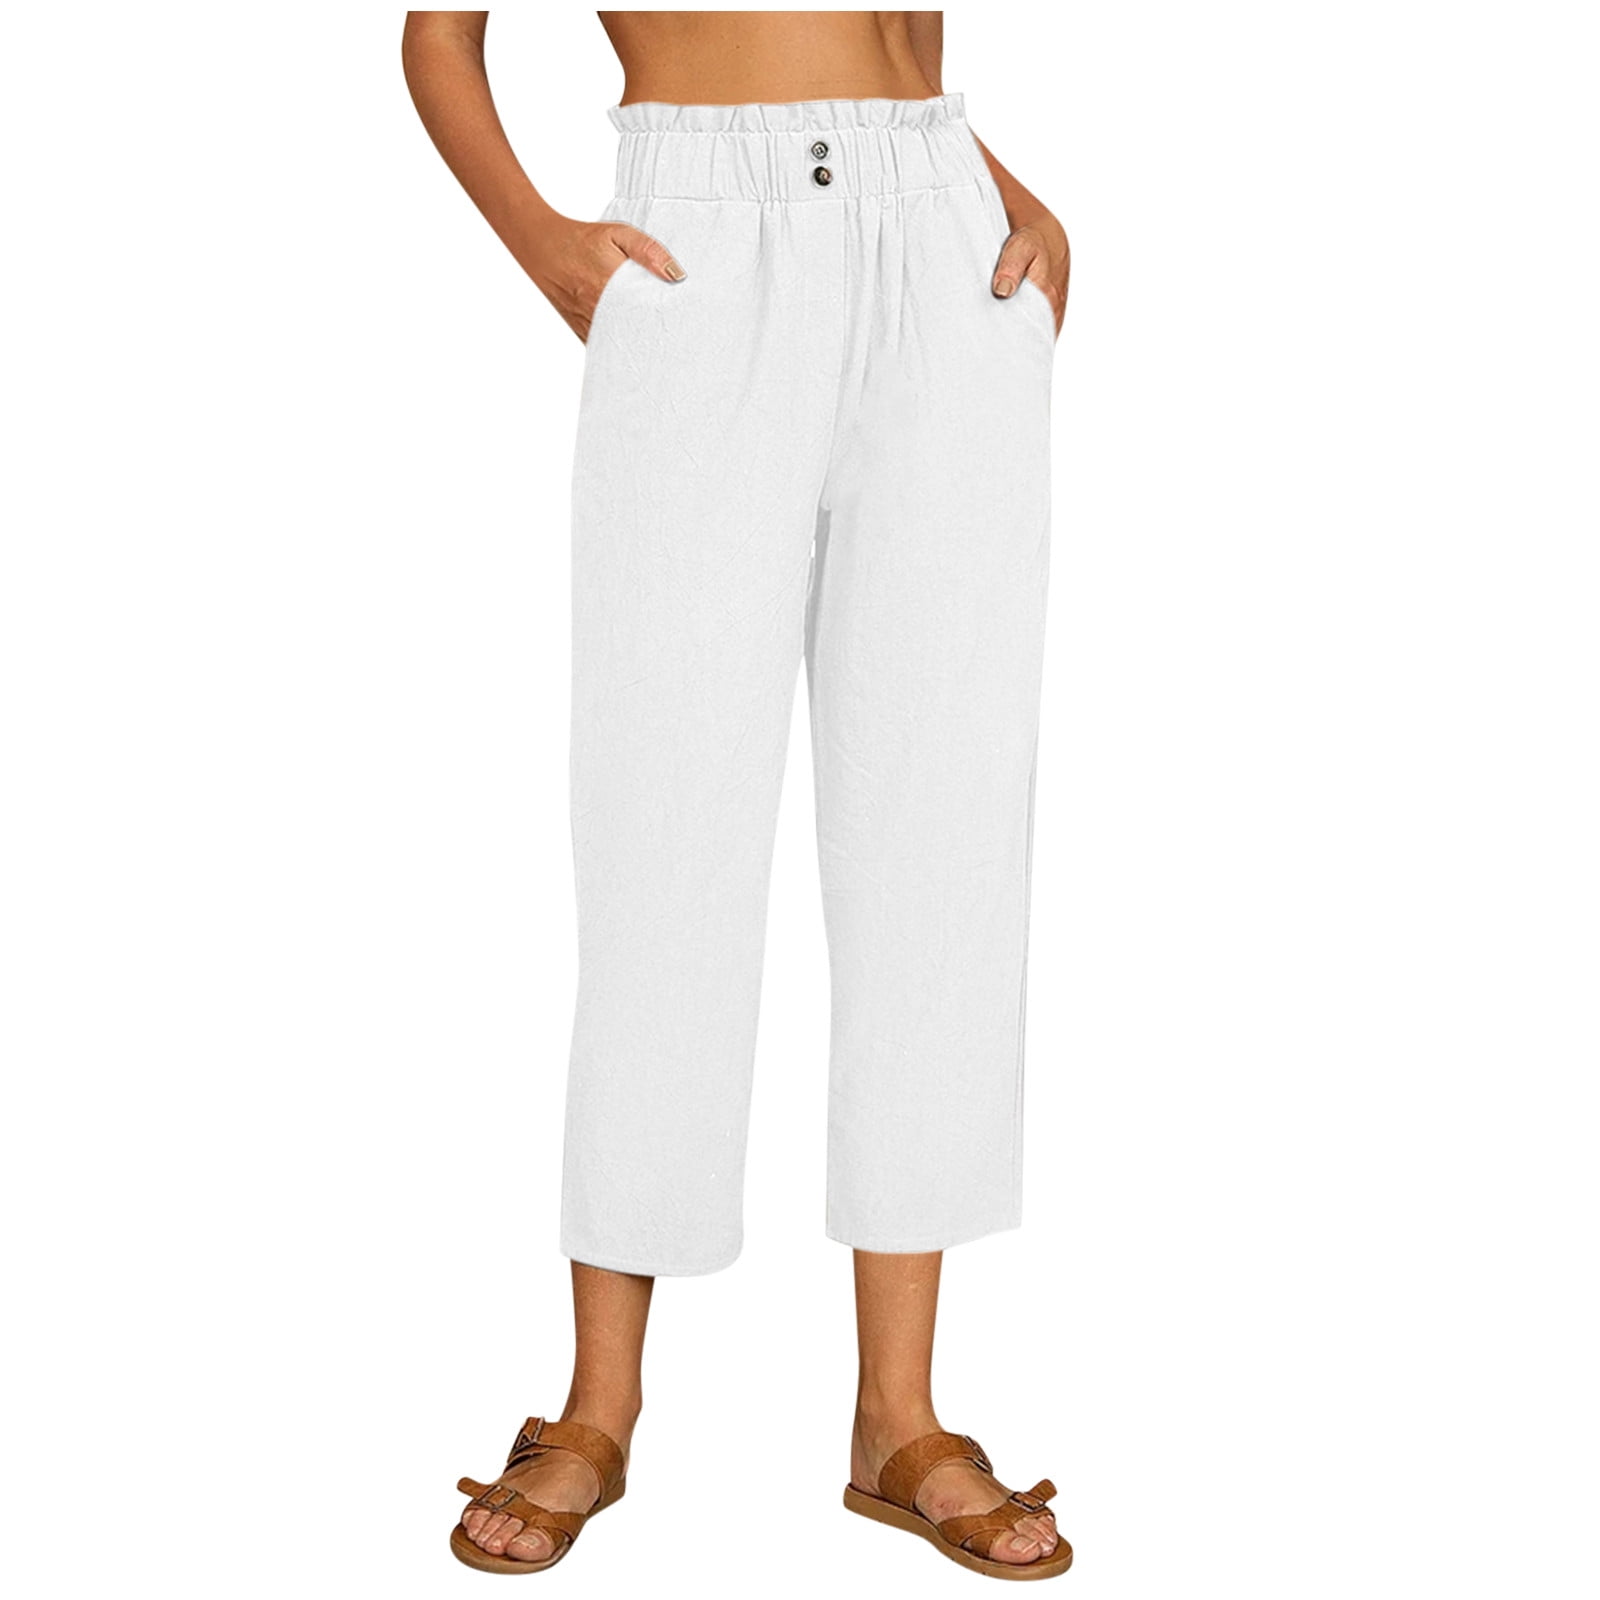 pgeraug leggings for women white linen for tightness trousers pocket plus  size pants for women white xl 